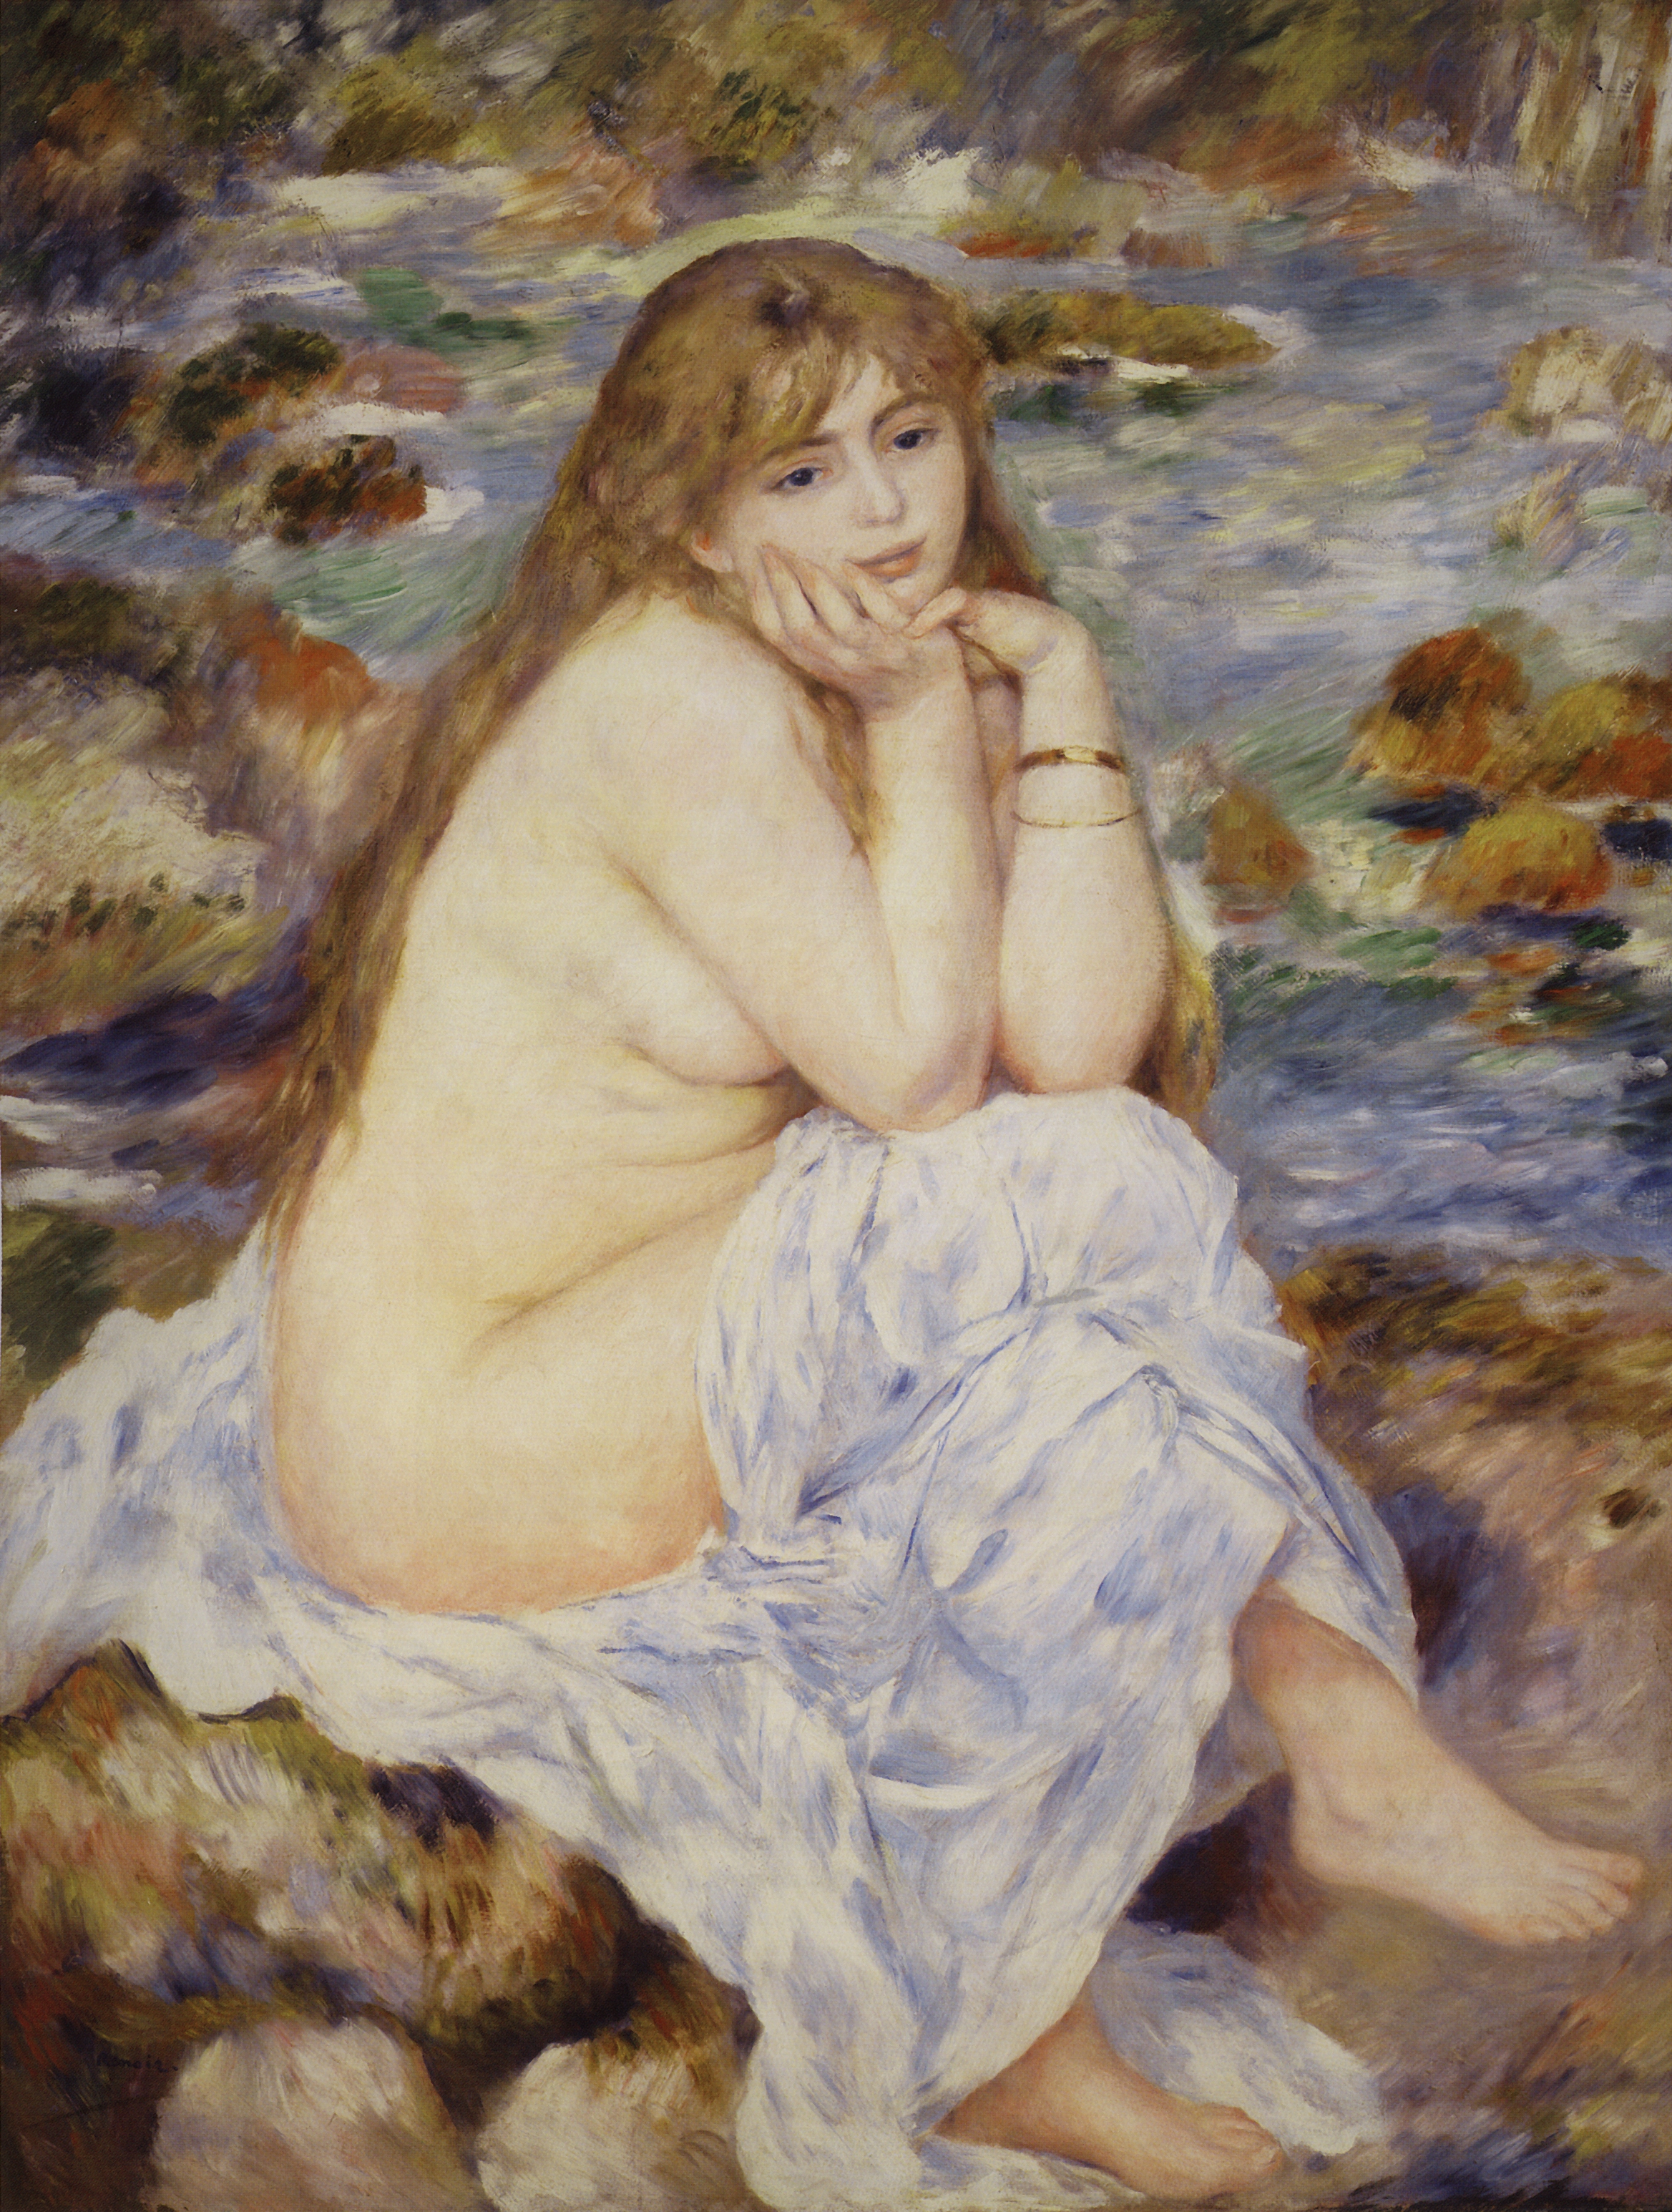 Ренуар. Сидящая купальщица. Около 1883-1884